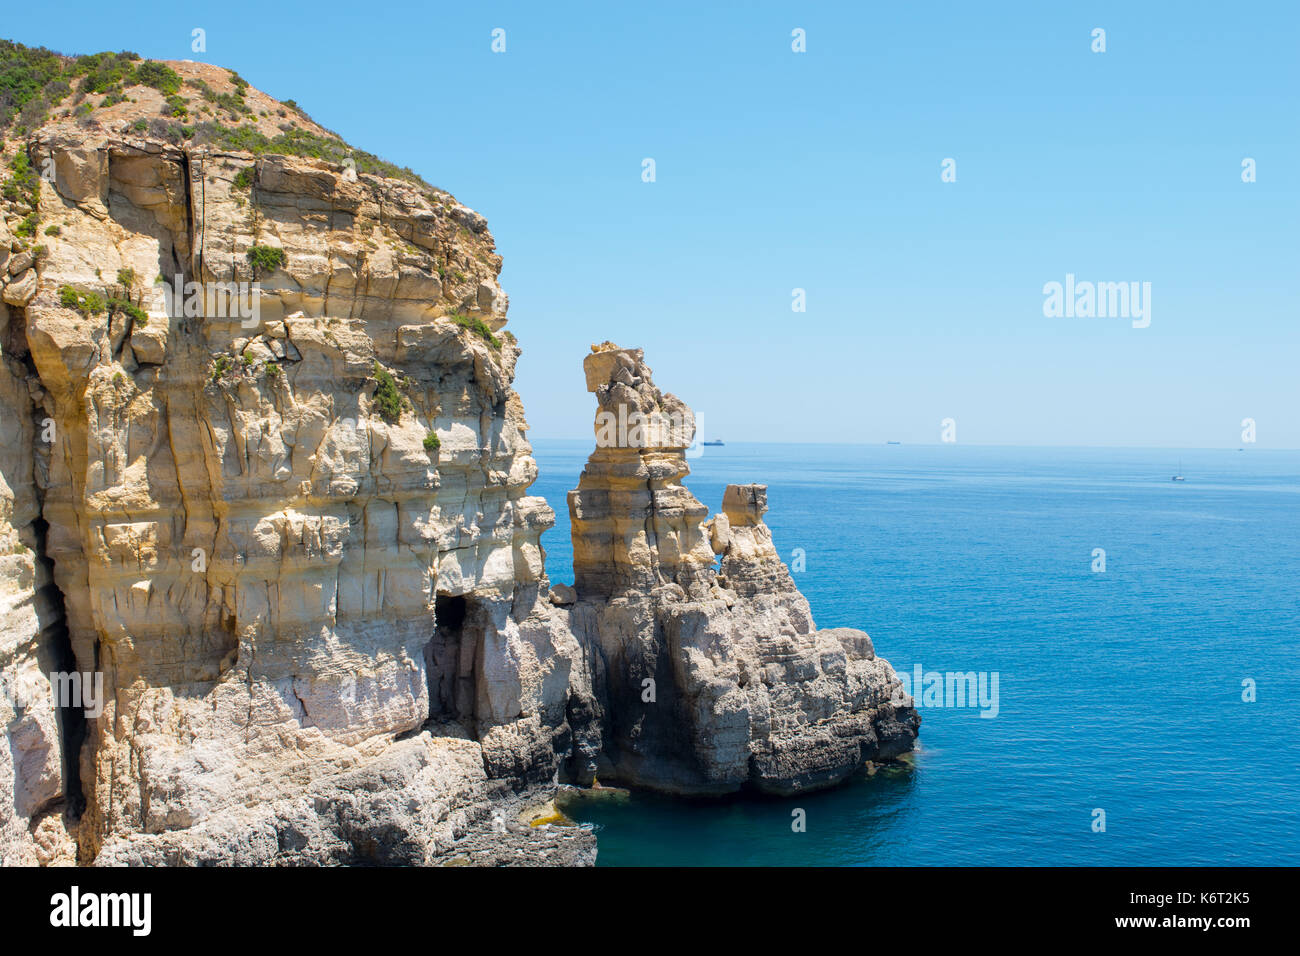 Ein Kalkstein Klippe mit einer kleinen Höhle und zwei short stacks, entlang der maltesischen Küste gefunden. Das Meer ist ruhig mit einem Handelsschiff Ferne. Stockfoto